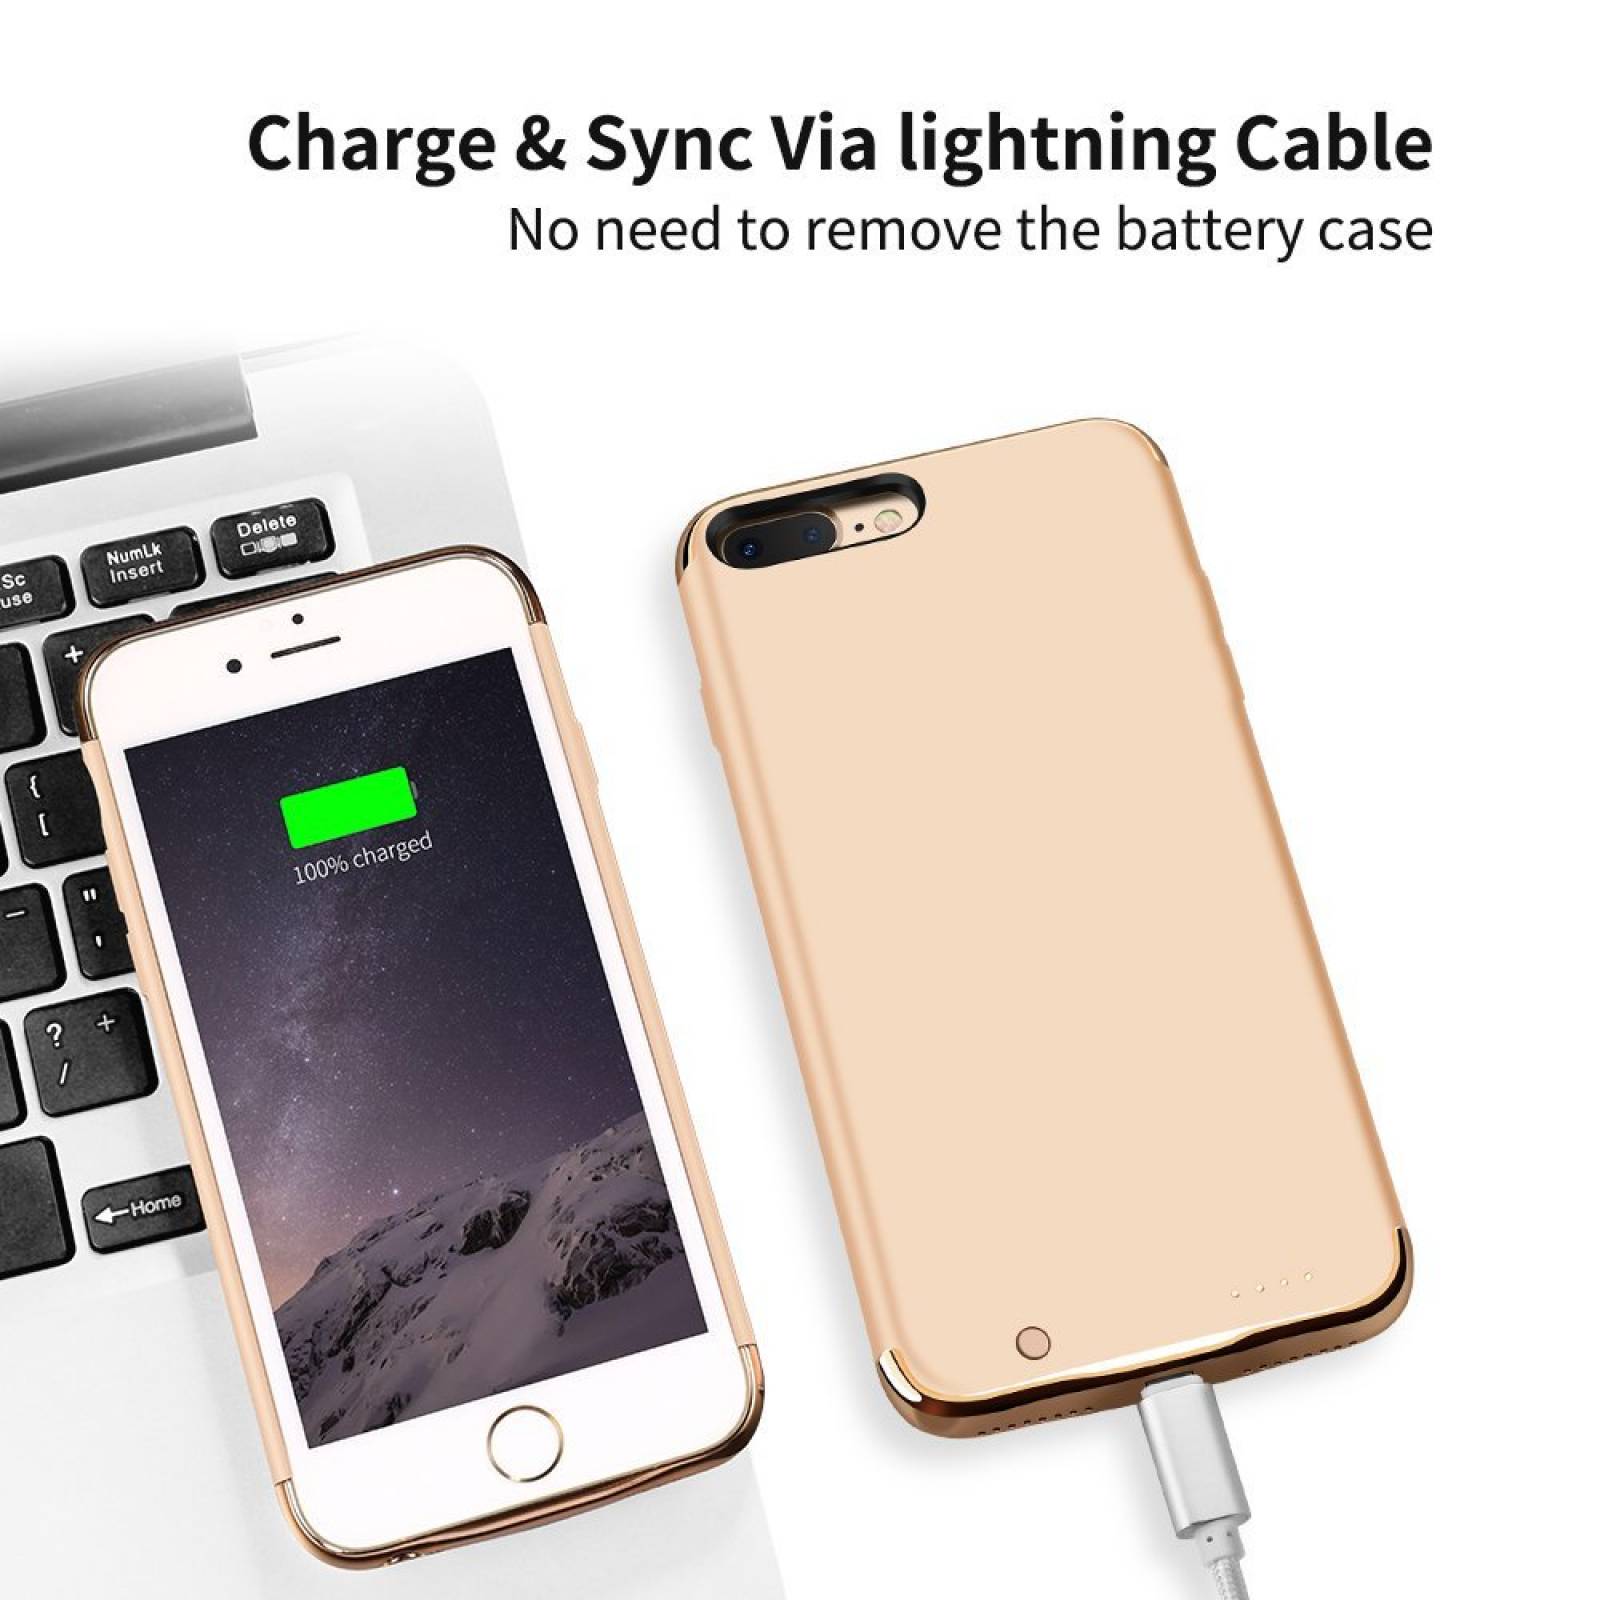 iPhone 7 Plus batería Joyroom Ultra delgada extendid -Dorado